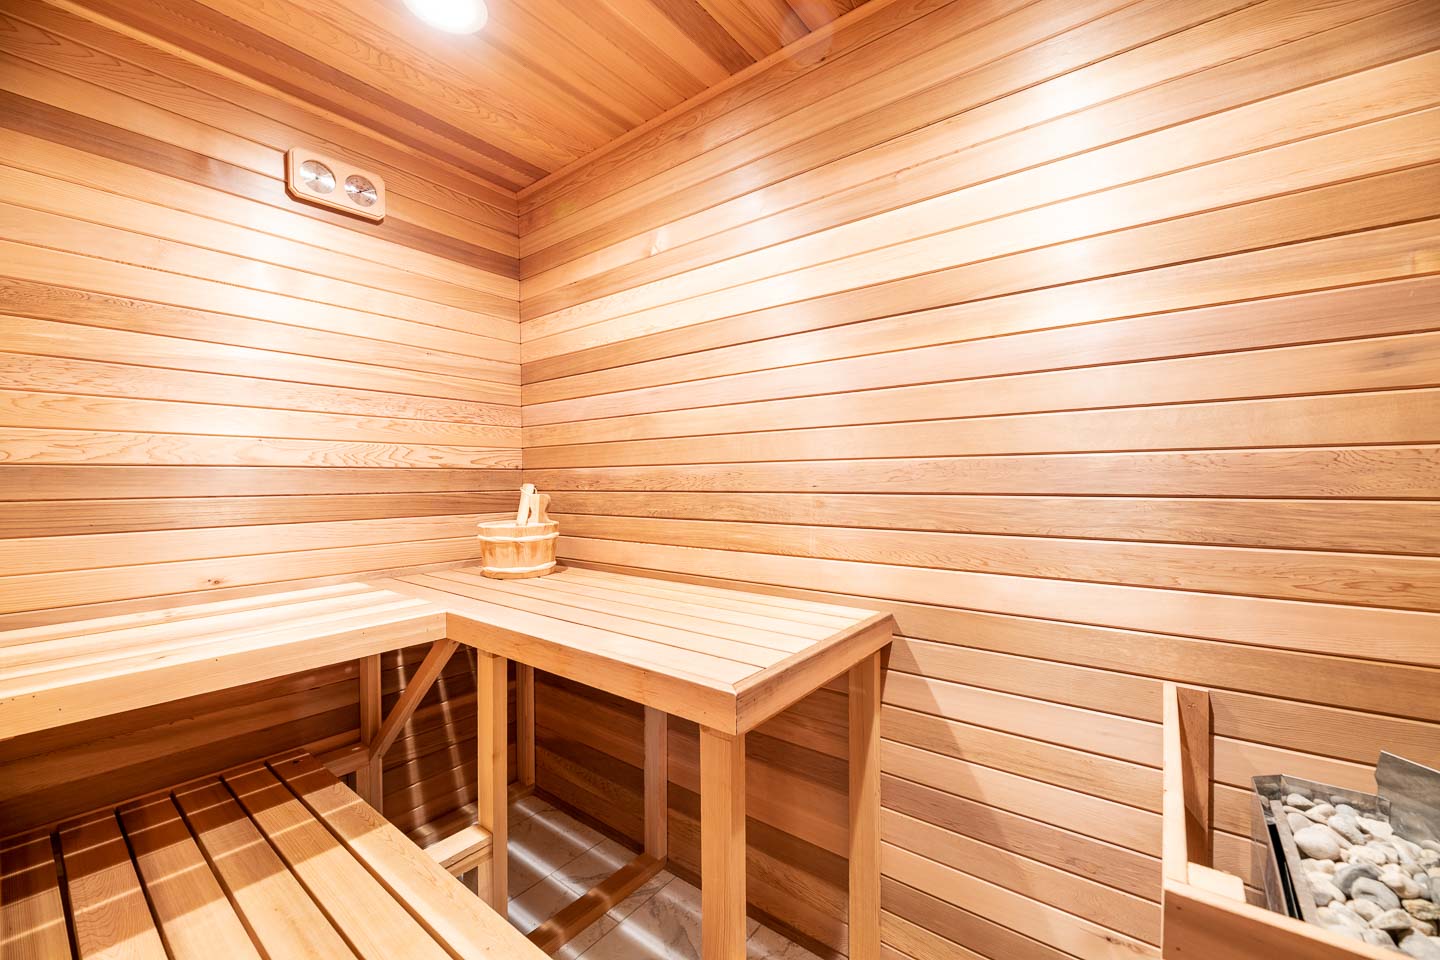 [amenities:sauna:1] Sauna